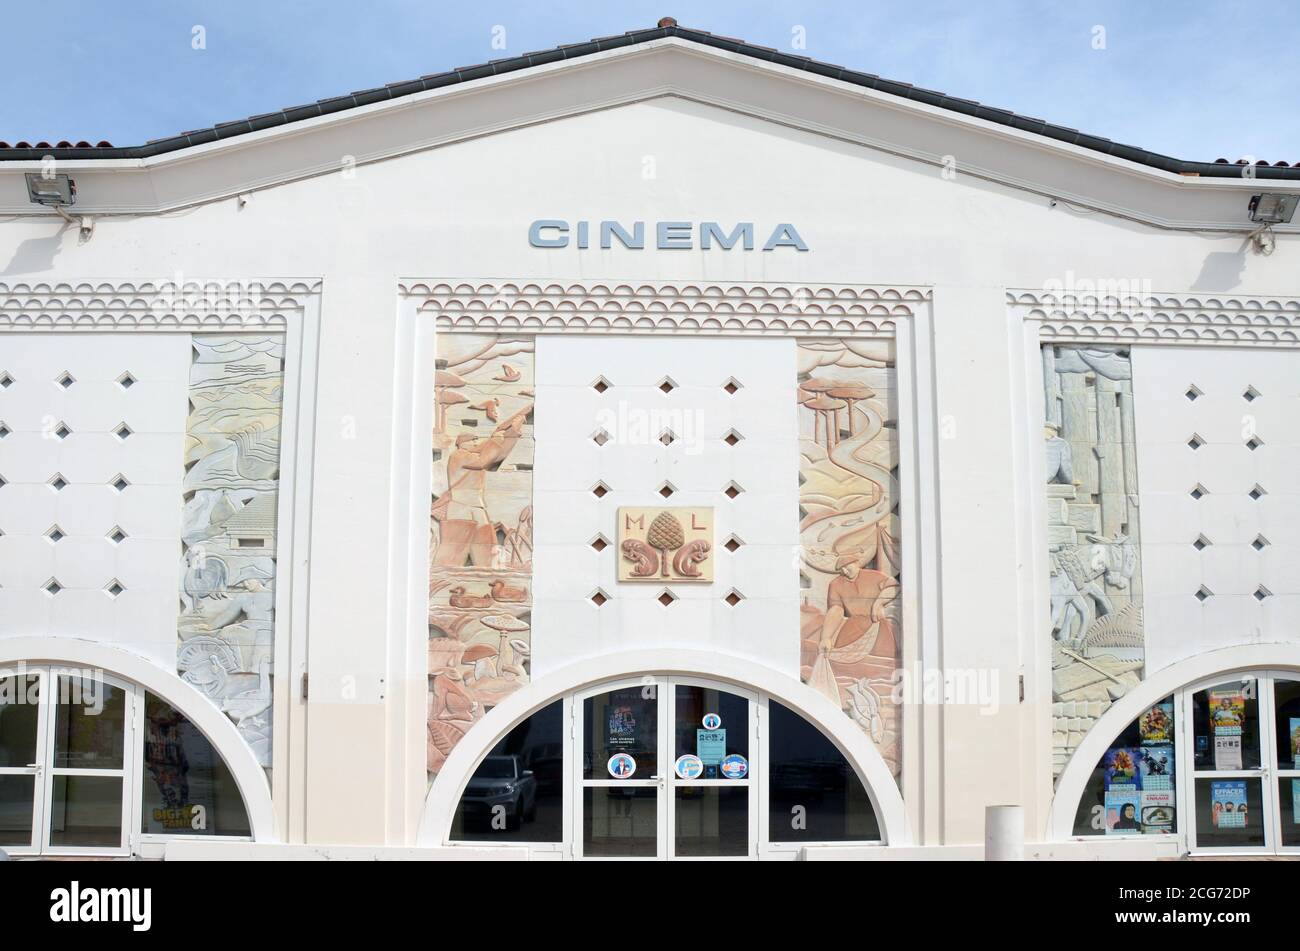 Die Stadt Morcenx, Südwestfrankreich, liegt zwischen Bordeaux und Bayonne. Hier ist die Art-Deco-Kino-Architektur. Stockfoto